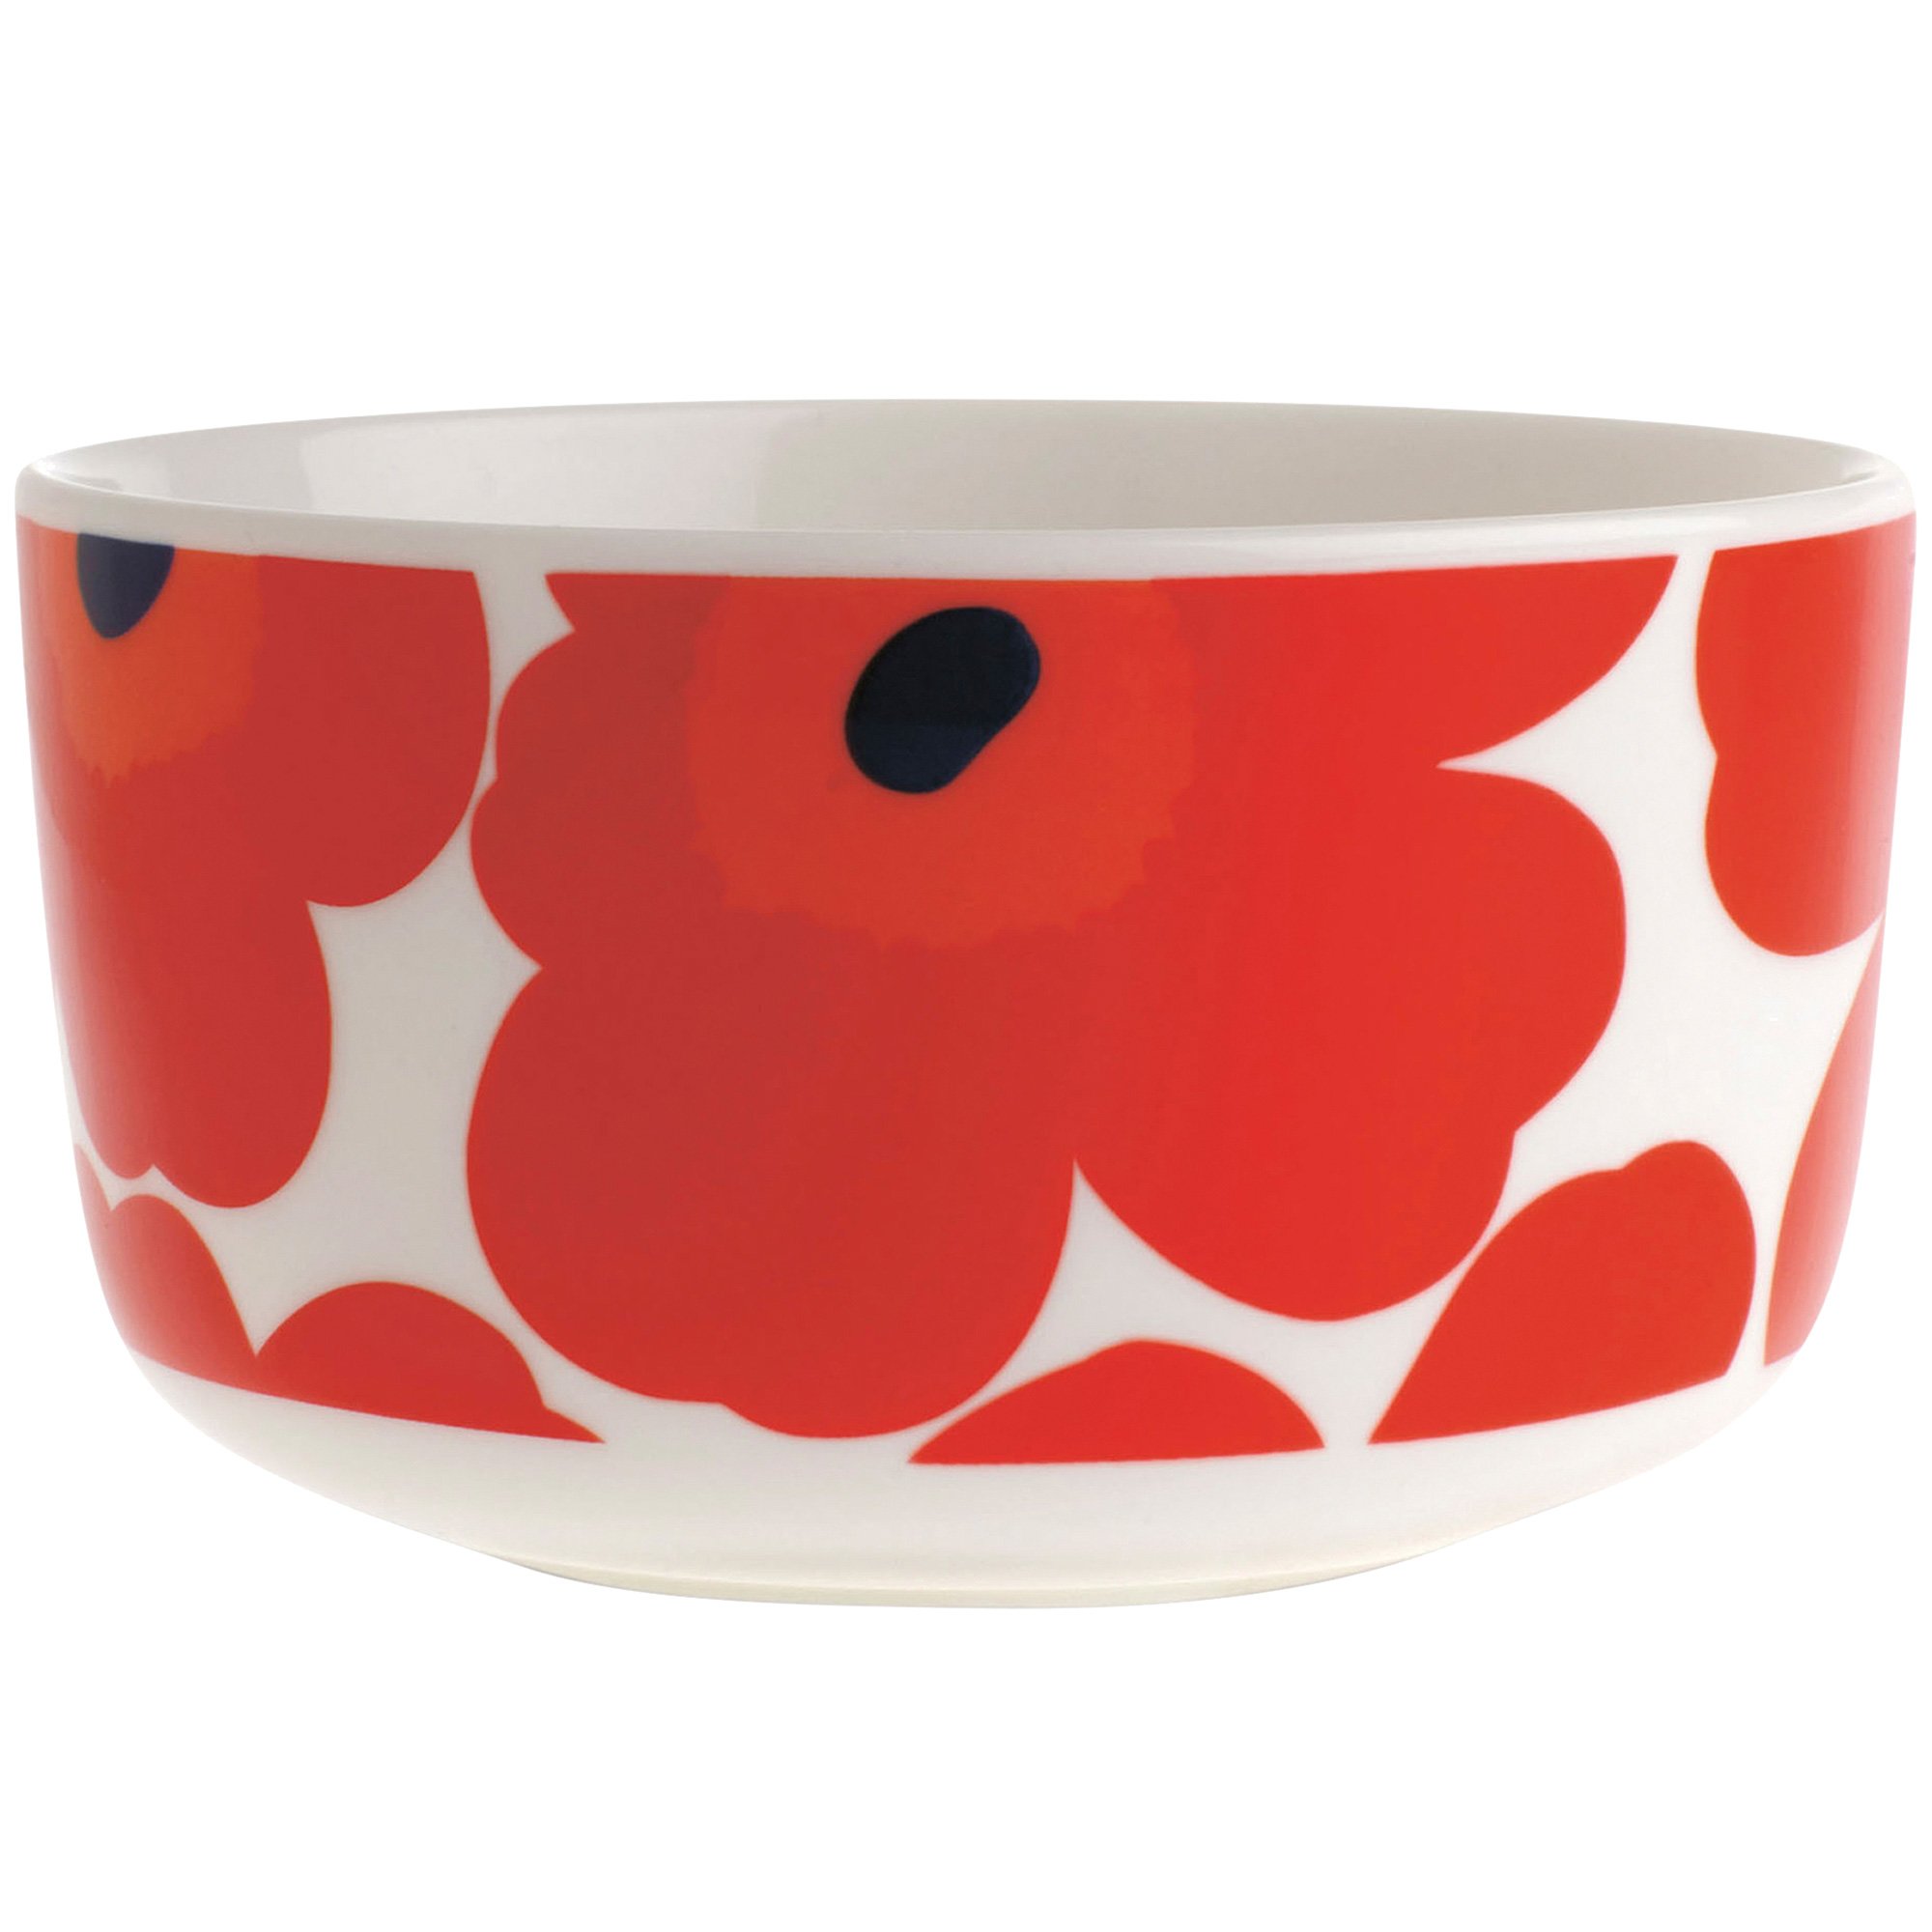 Marimekko Unikko skål, 5 dl., rød